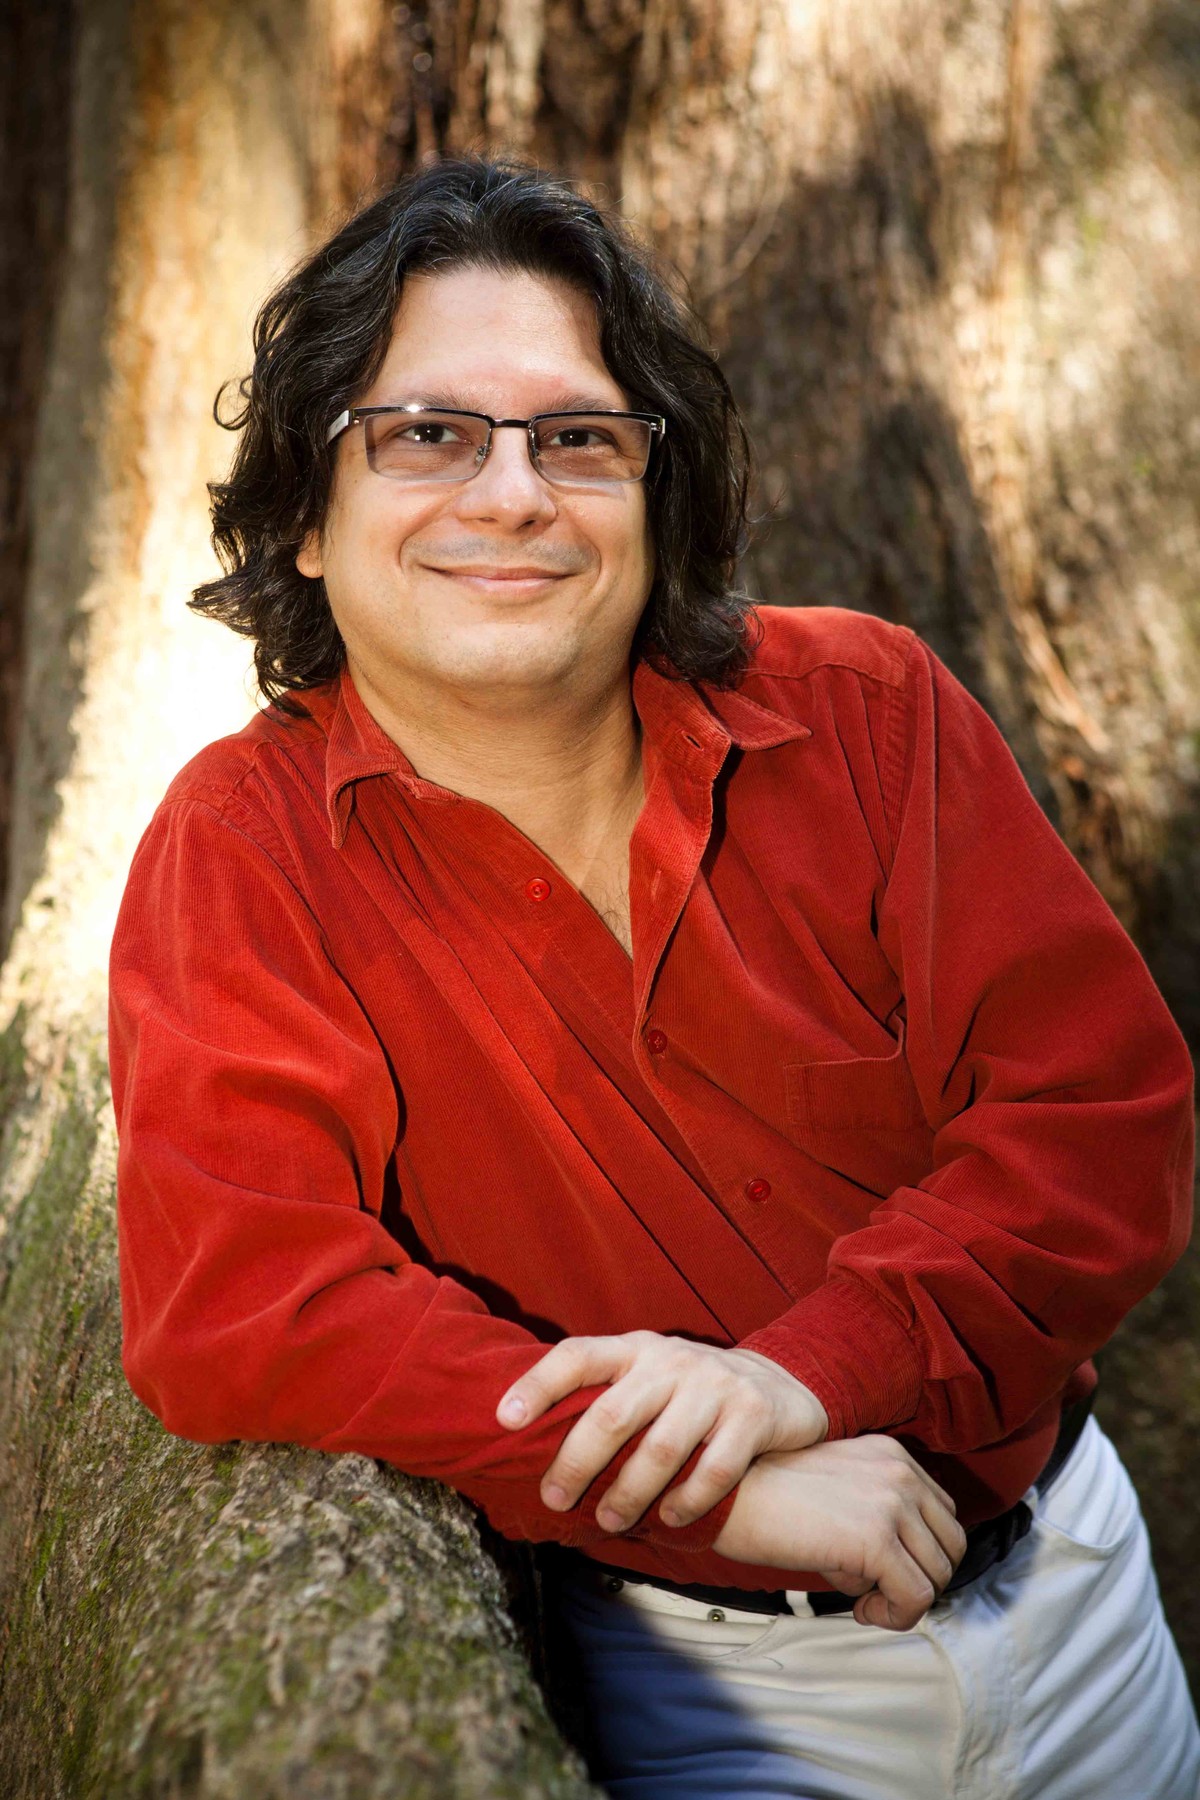 Morre o compositor e produtor Sergio Roberto de Oliveira aos 46 anos - Globo.com